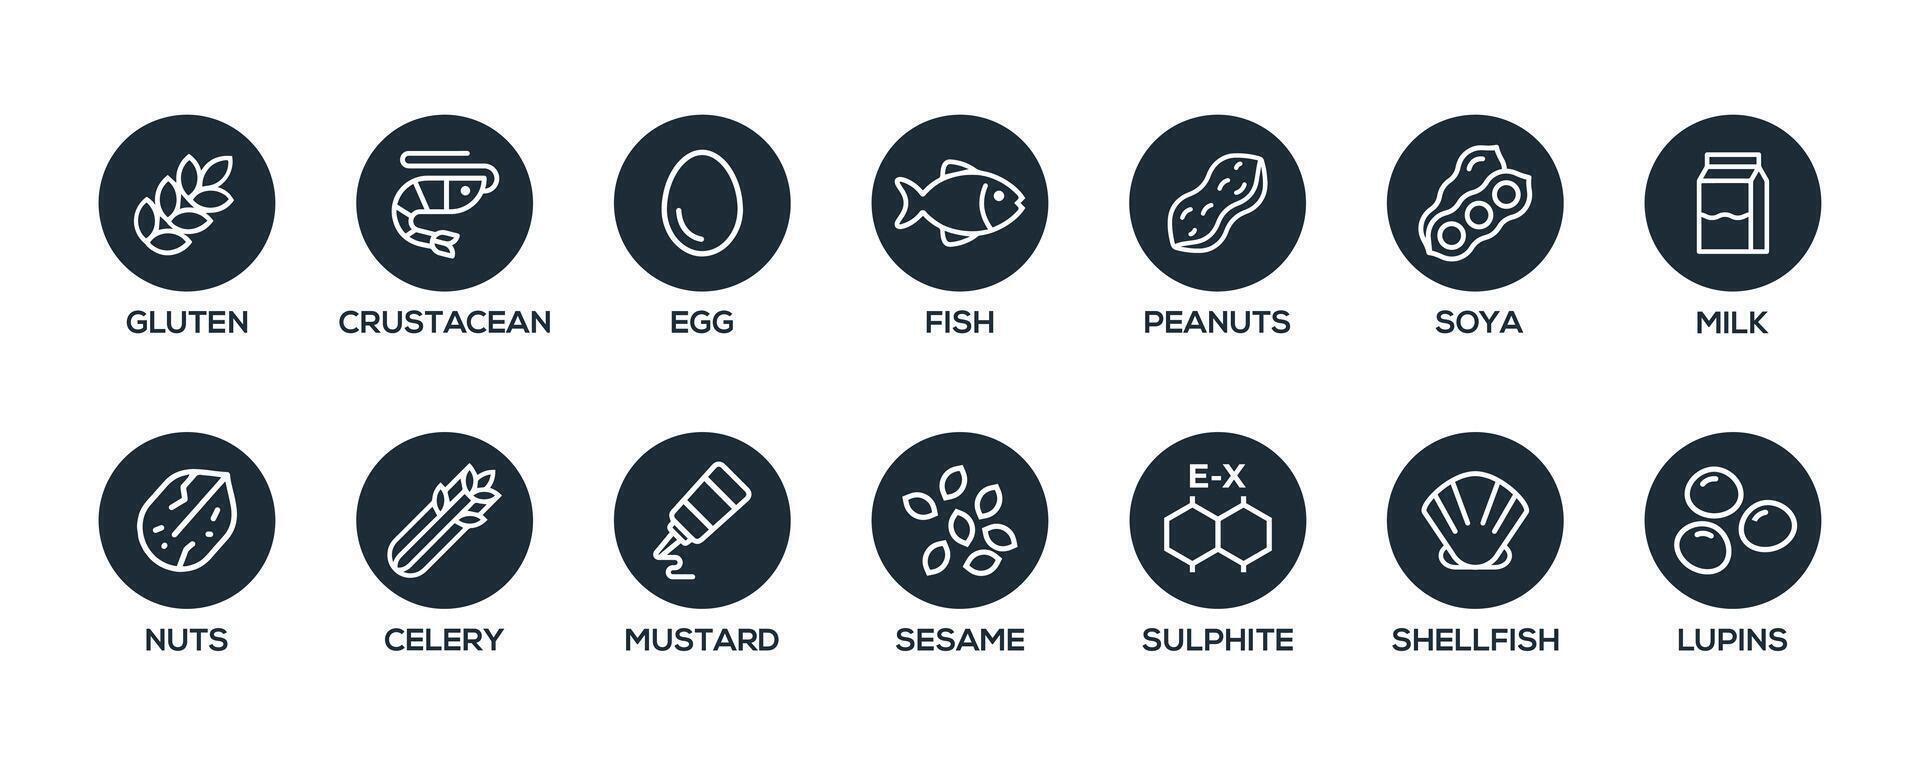 geïsoleerd vector logo reeks insigne ingrediënt waarschuwing label. zwart en wit allergenen pictogrammen. voedsel onverdraagzaamheid. de 14 allergenen verplicht naar verklaren geschreven in Engels